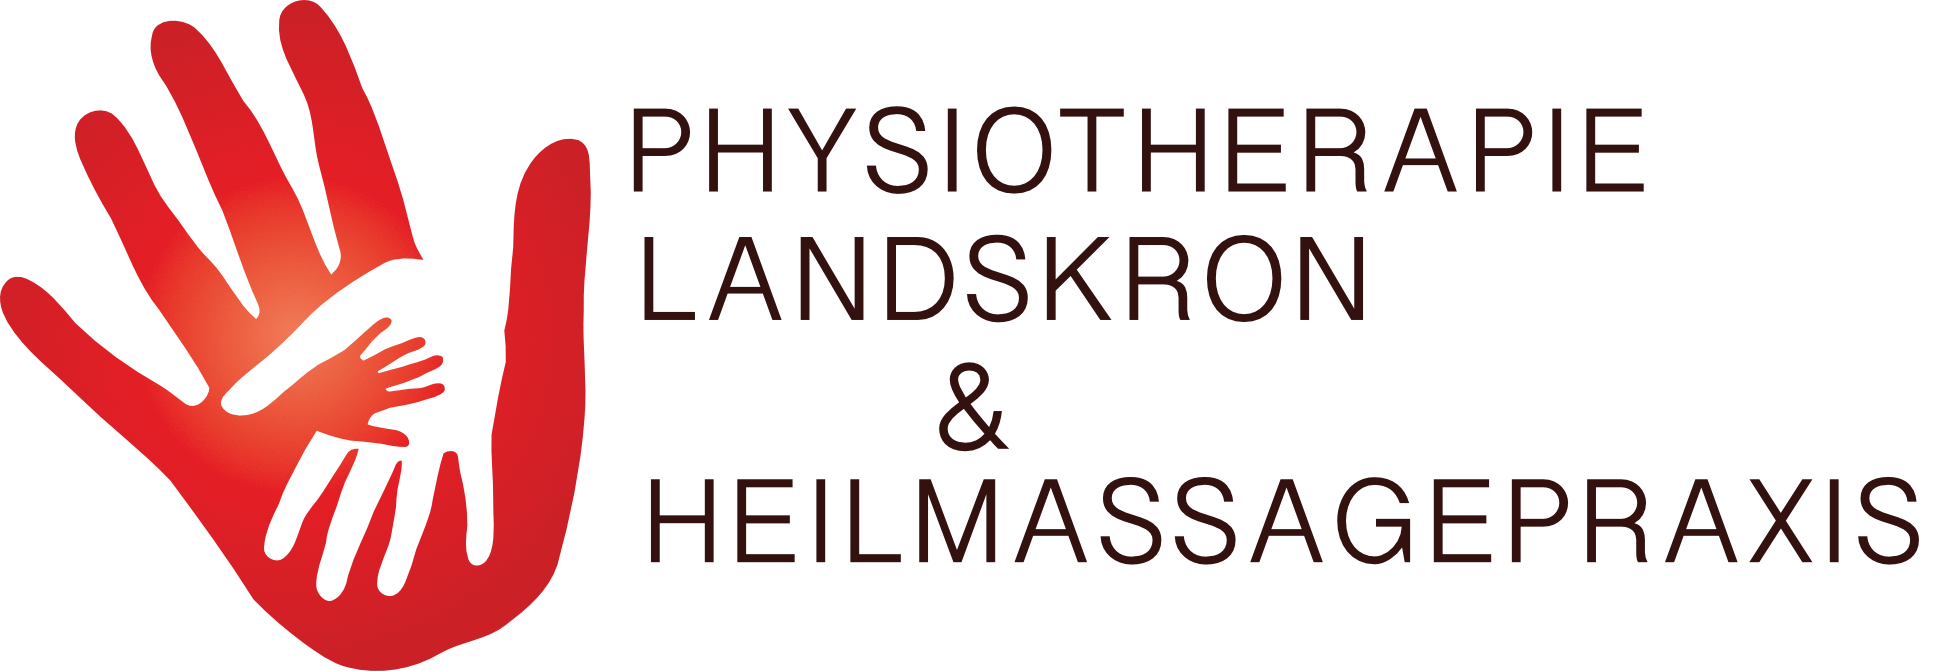 Physiotherapie & Heilmassage Landskron